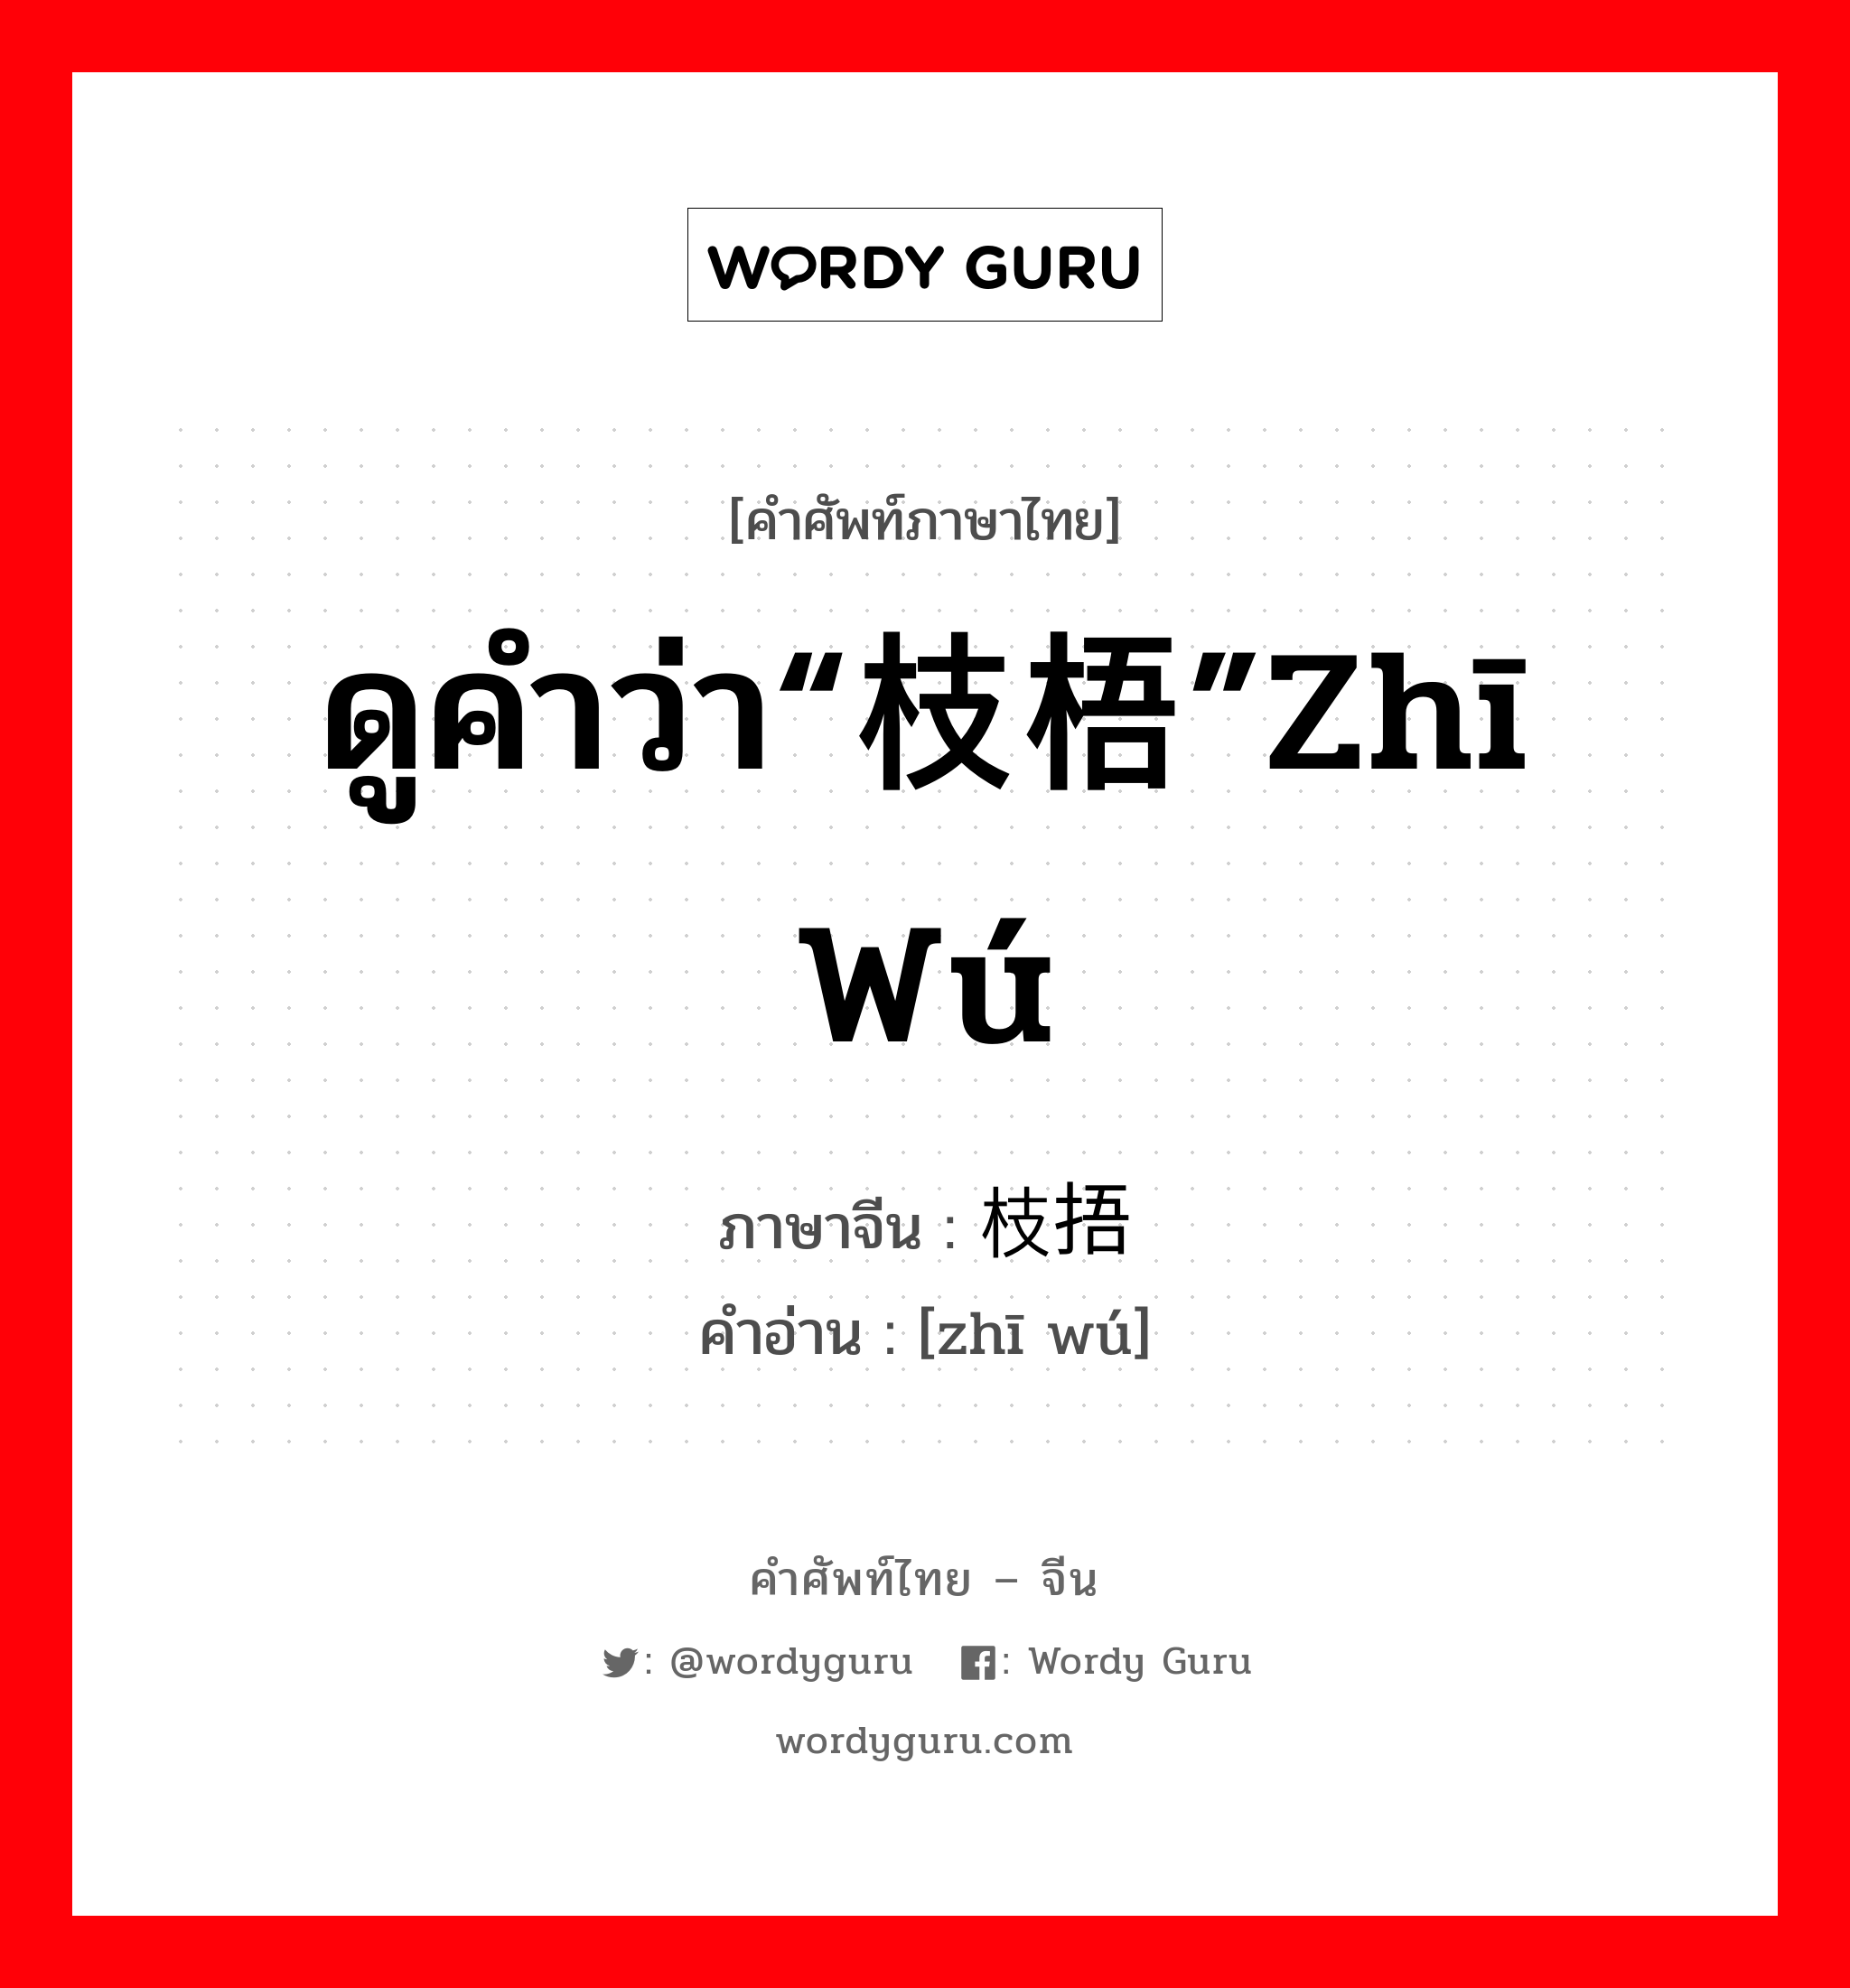 ดูคำว่า“枝梧”zhī wú ภาษาจีนคืออะไร, คำศัพท์ภาษาไทย - จีน ดูคำว่า“枝梧”zhī wú ภาษาจีน 枝捂 คำอ่าน [zhī wú]